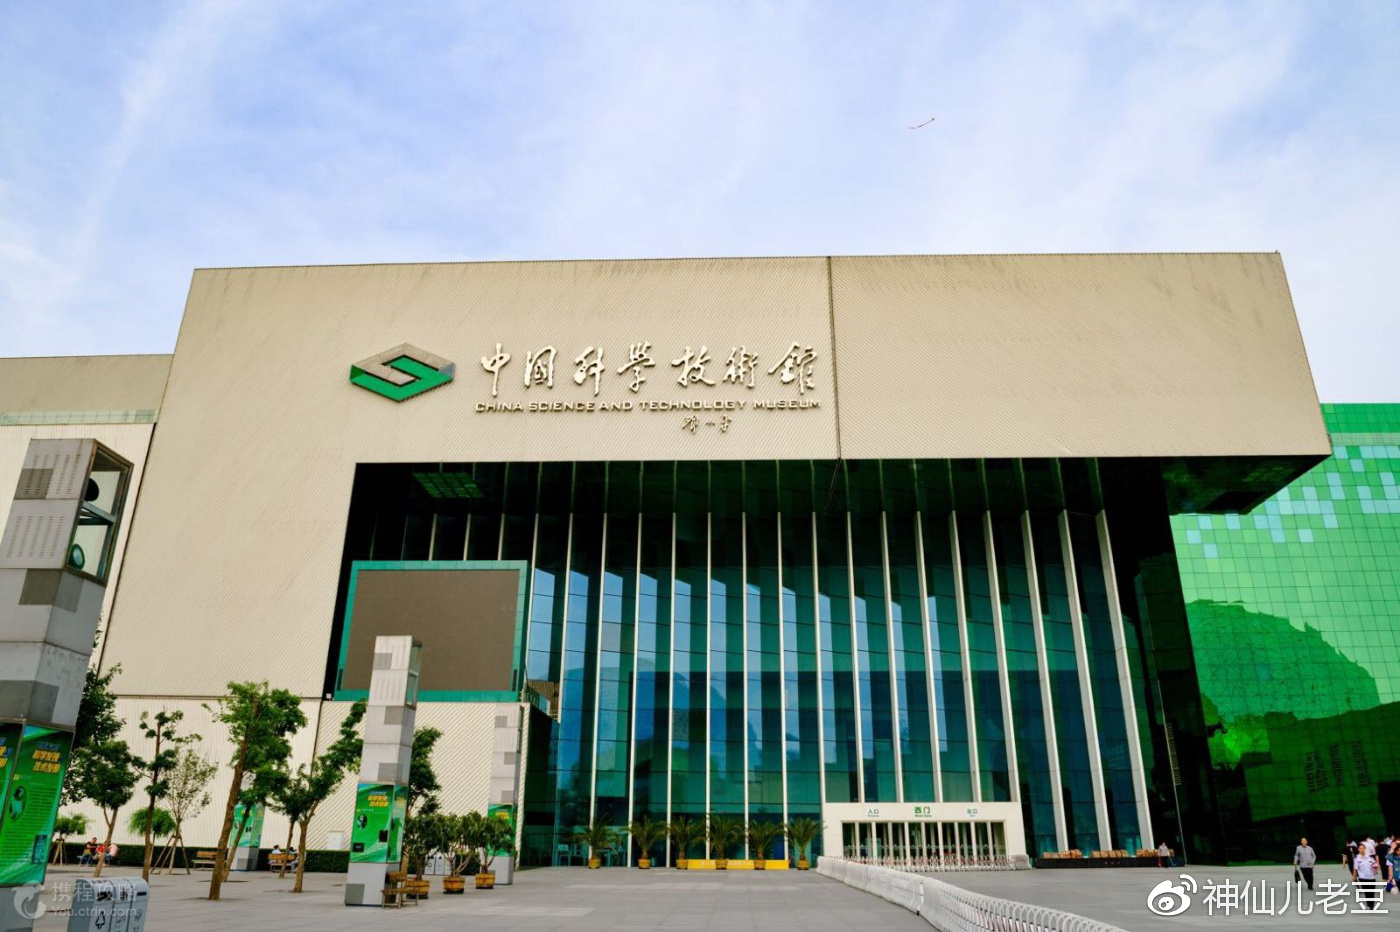 中国科学技术馆是我国 唯一的国家级科技馆, 馆内除了众多的科技展览